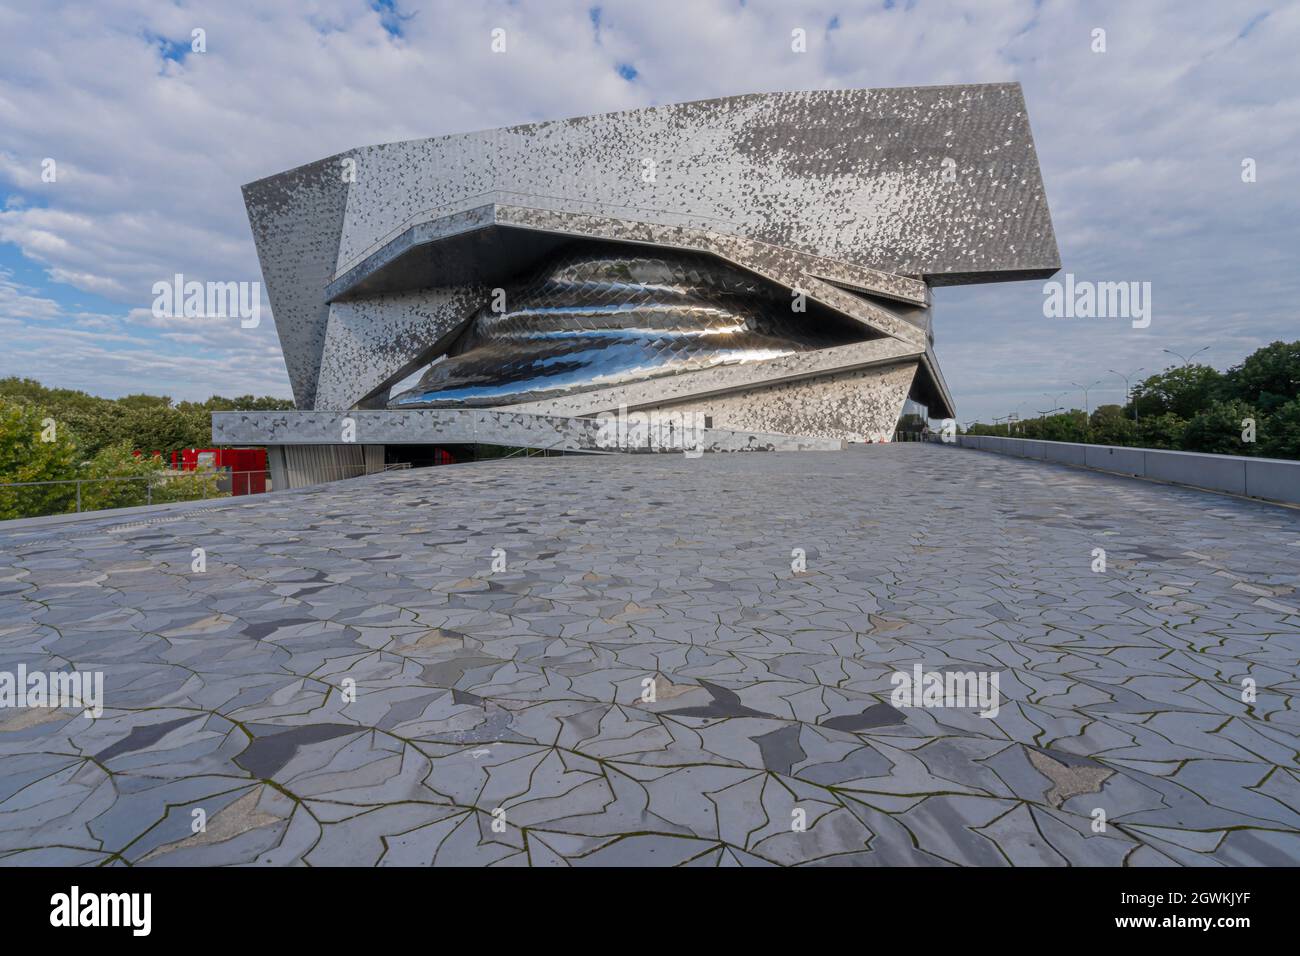 Paris, France - 09 18 2021: View of Philharmonie de Paris building Stock Photo